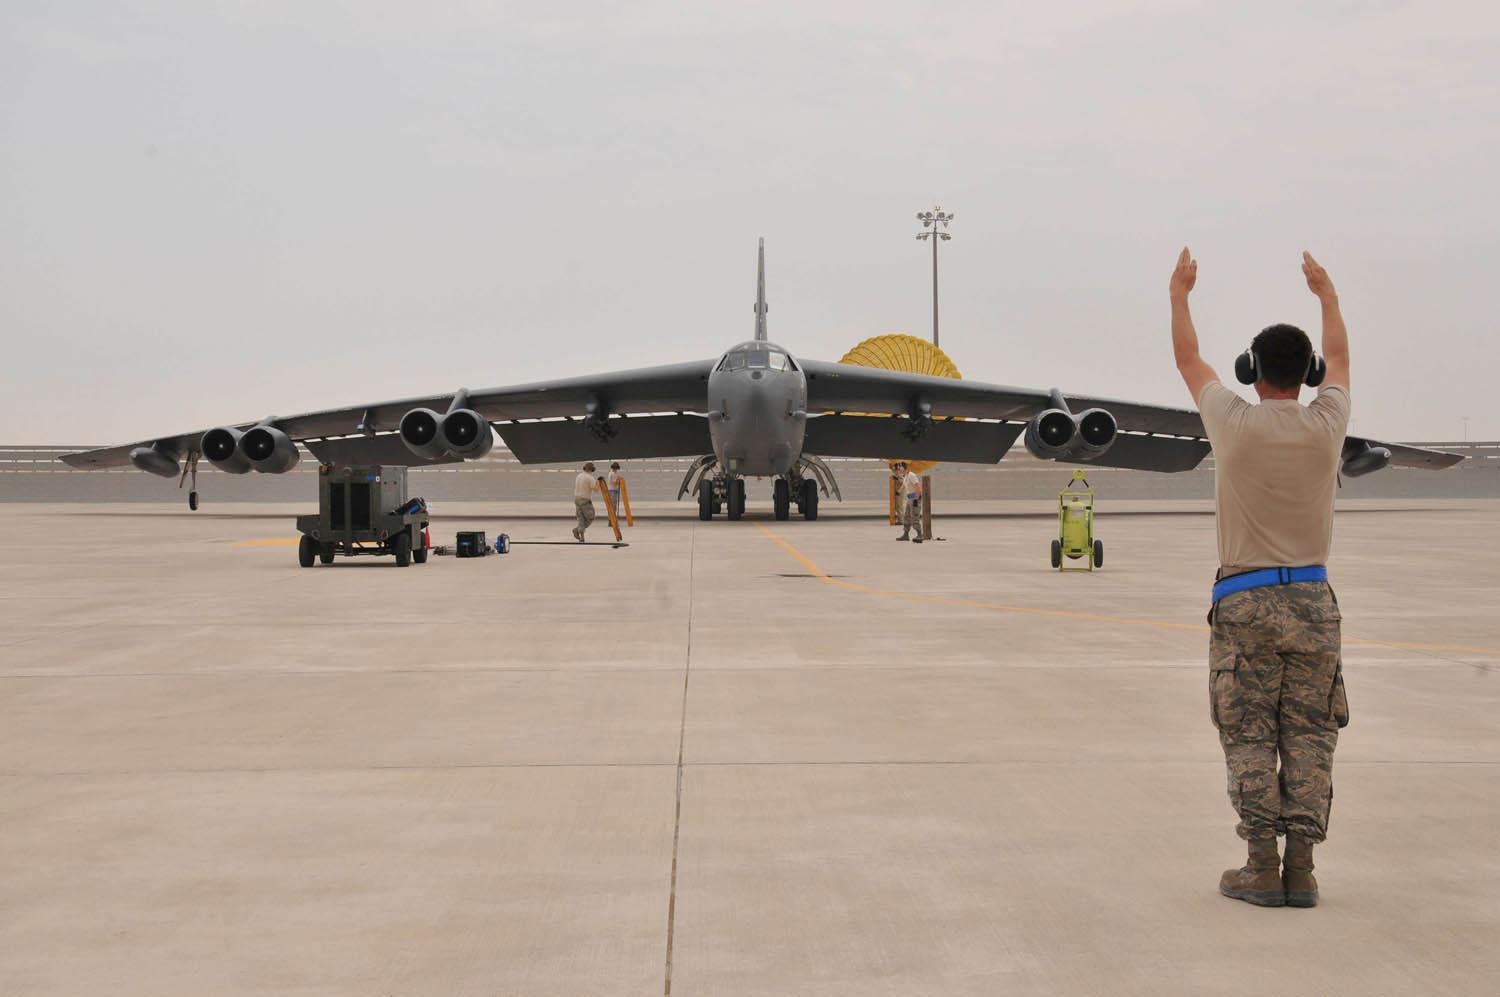  جندي أميركي يوجه قاصفة بي52 العملاقة بعد هبوطها في قاعدة العديد الجوية في قطر